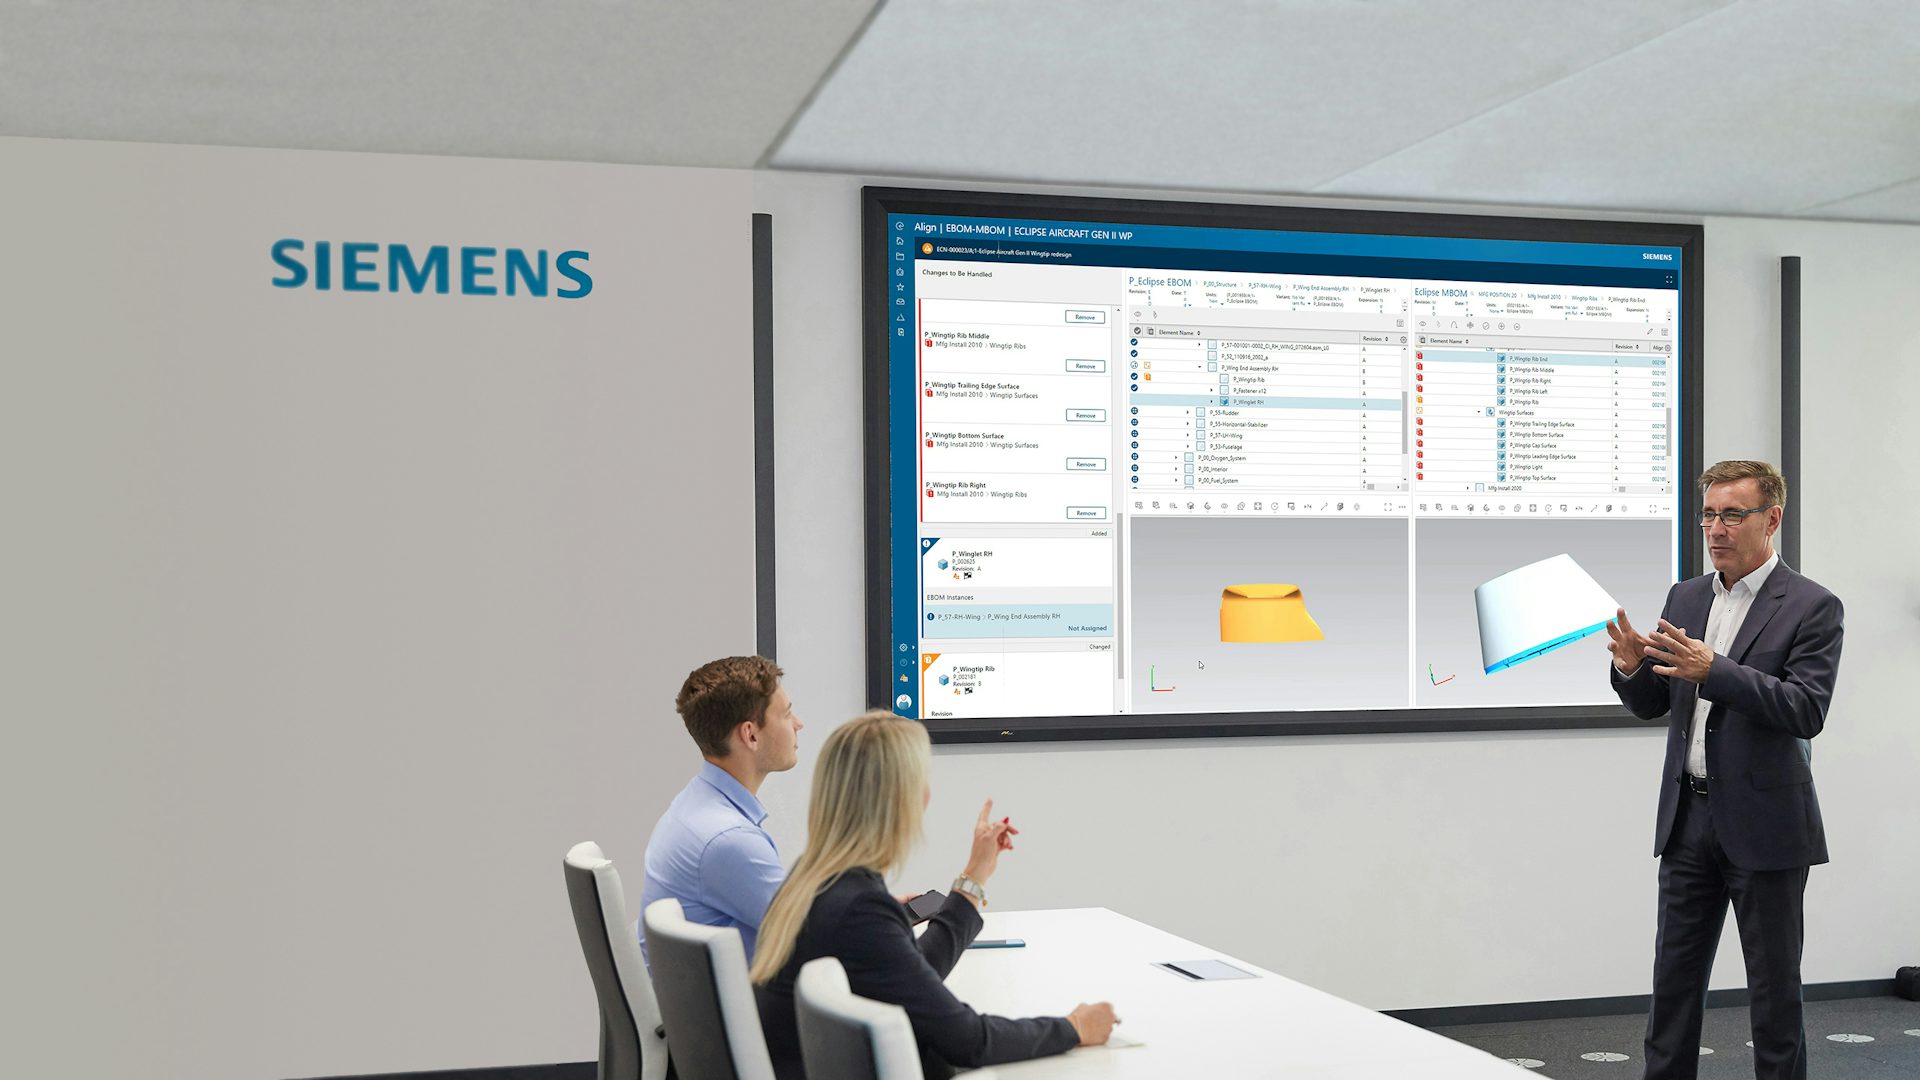 Trzech planistów produkcji przeglądających plan procesu w oprogramowaniu firmy Siemens na dużym ekranie znajdującym się w sali konferencyjnej.